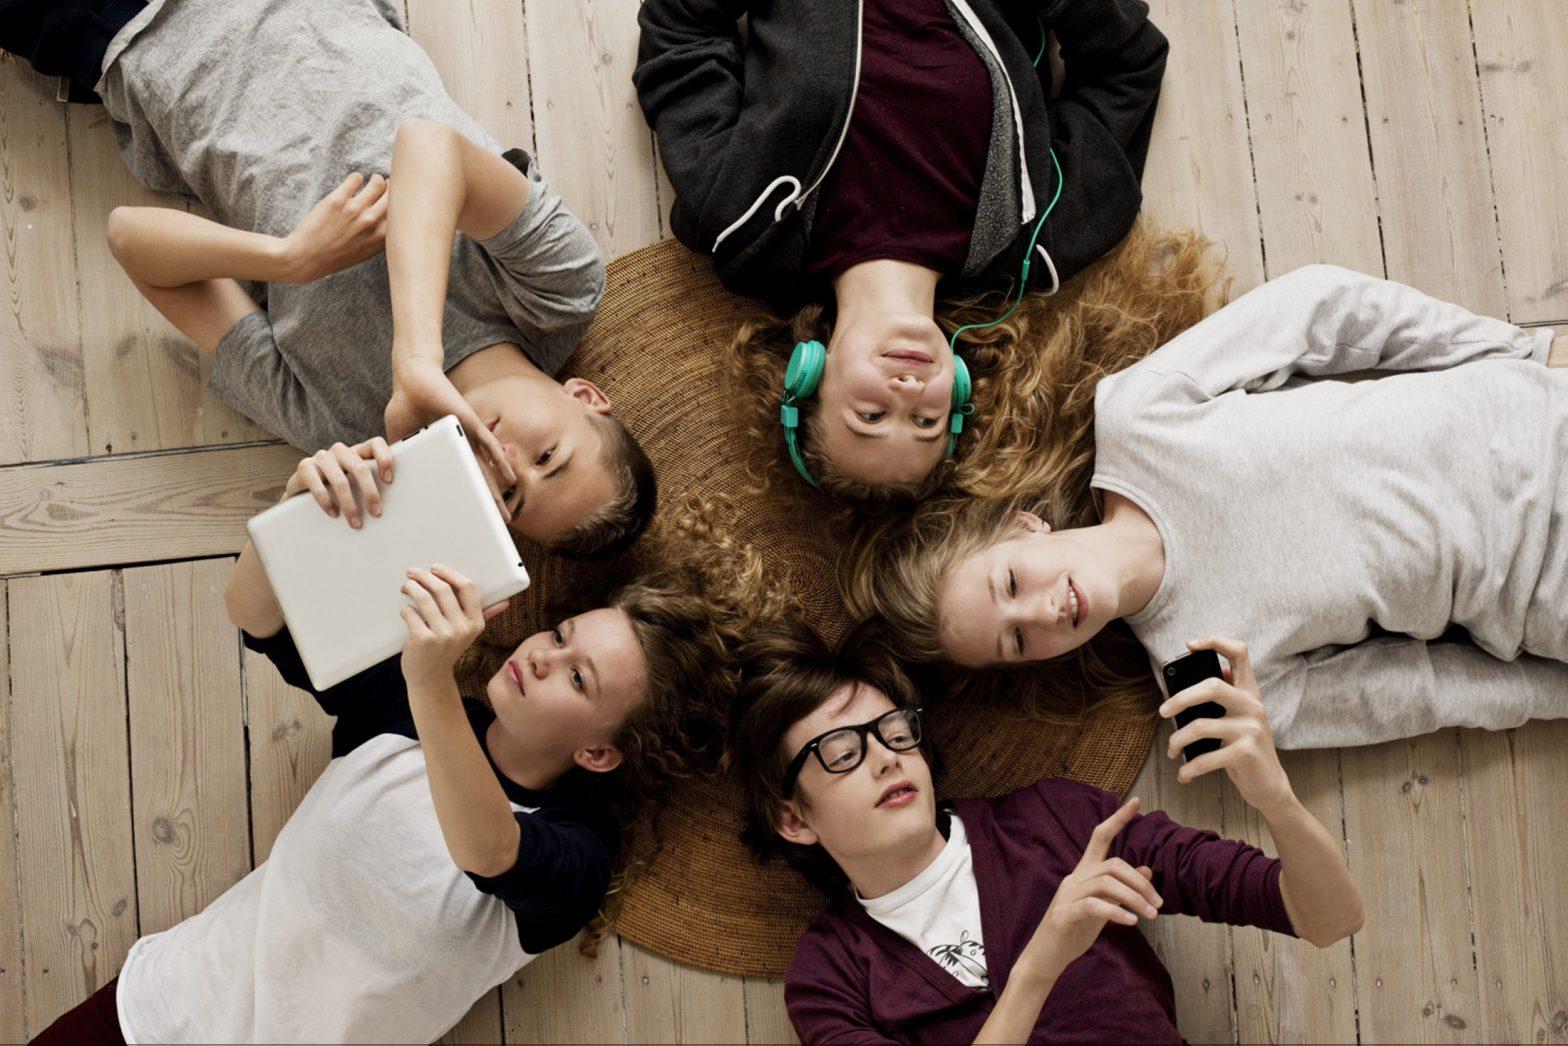 Social media e mondi virtuali nell’adolescente oggi: